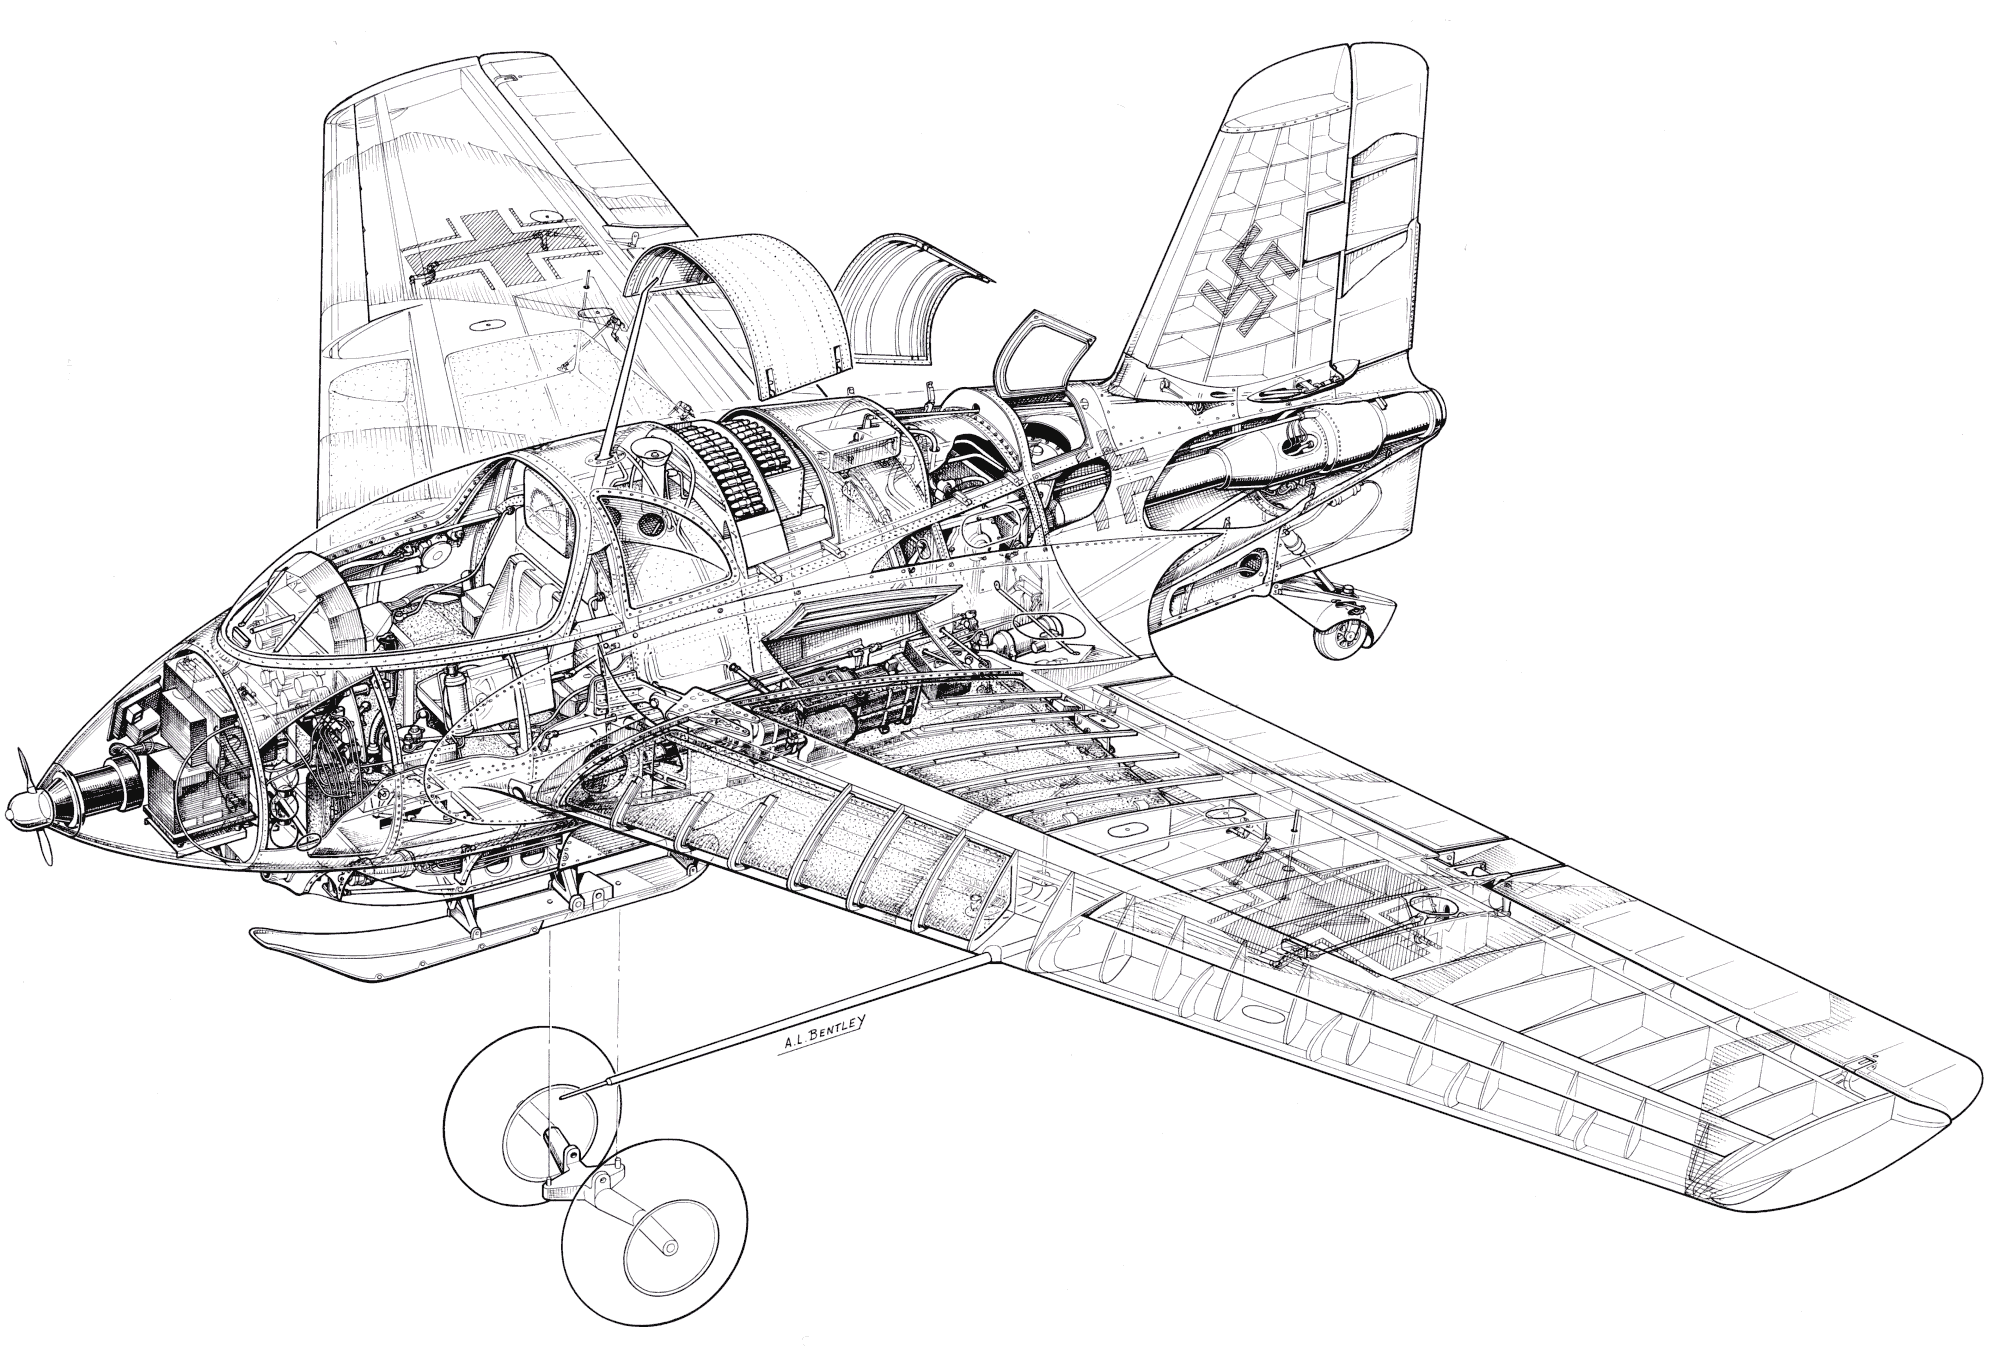 Messerschmitt Me 163 Komet cutaway